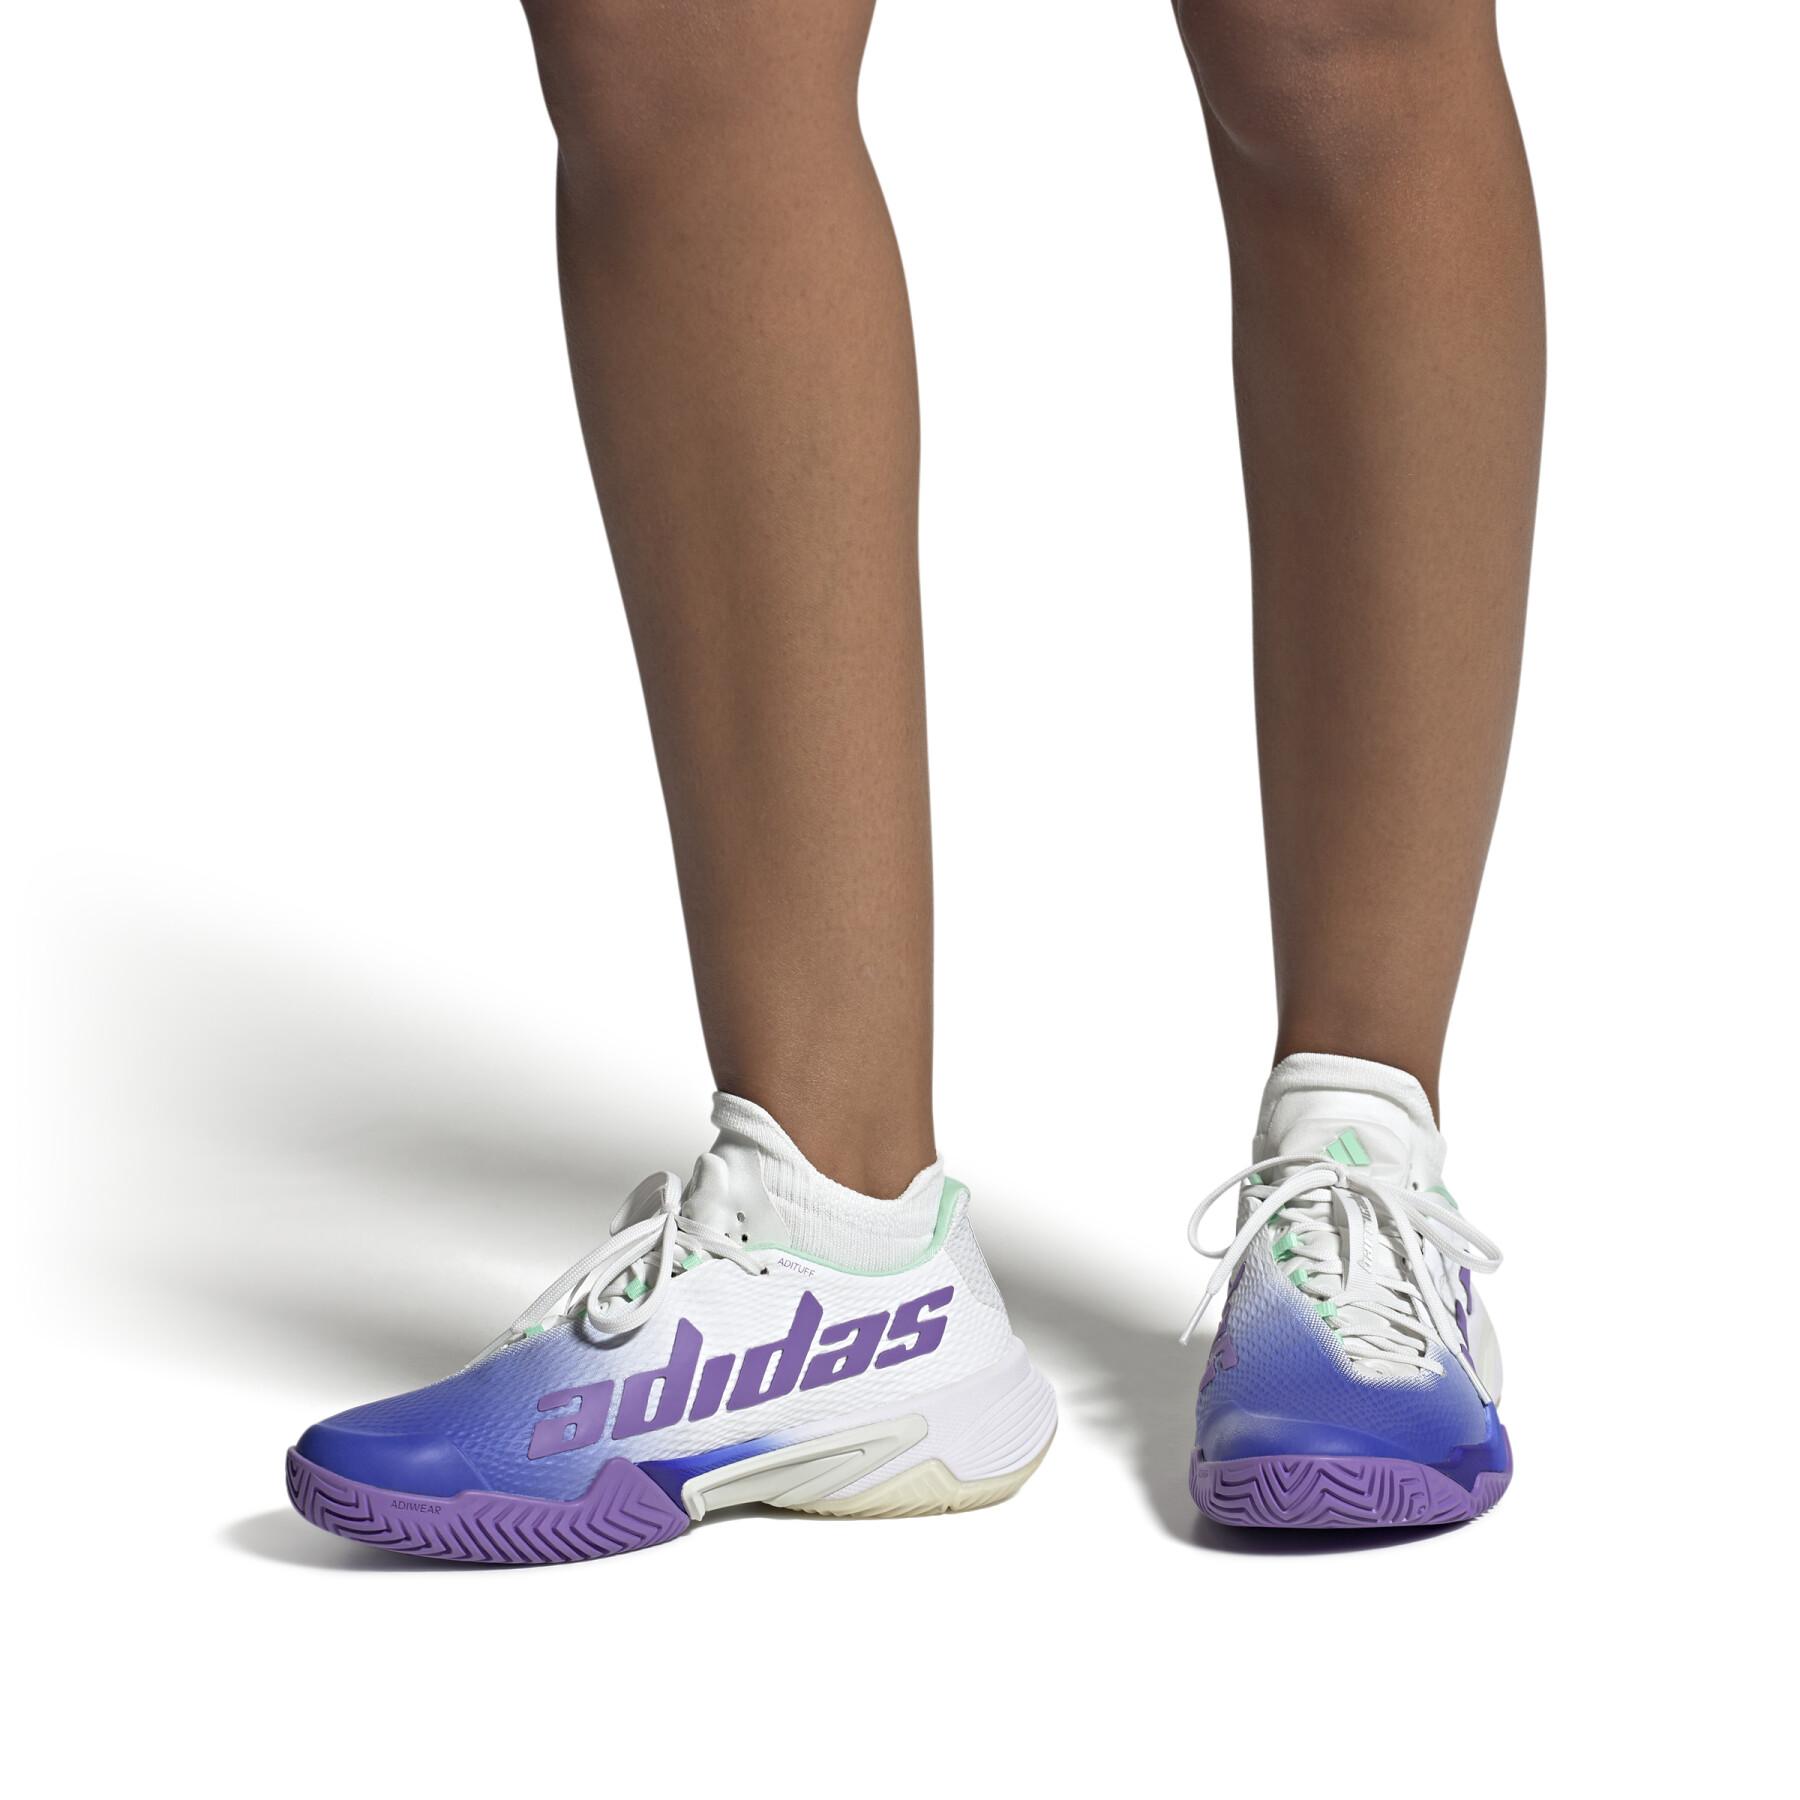 Chaussures de tennis femme adidas Barricade Lucid